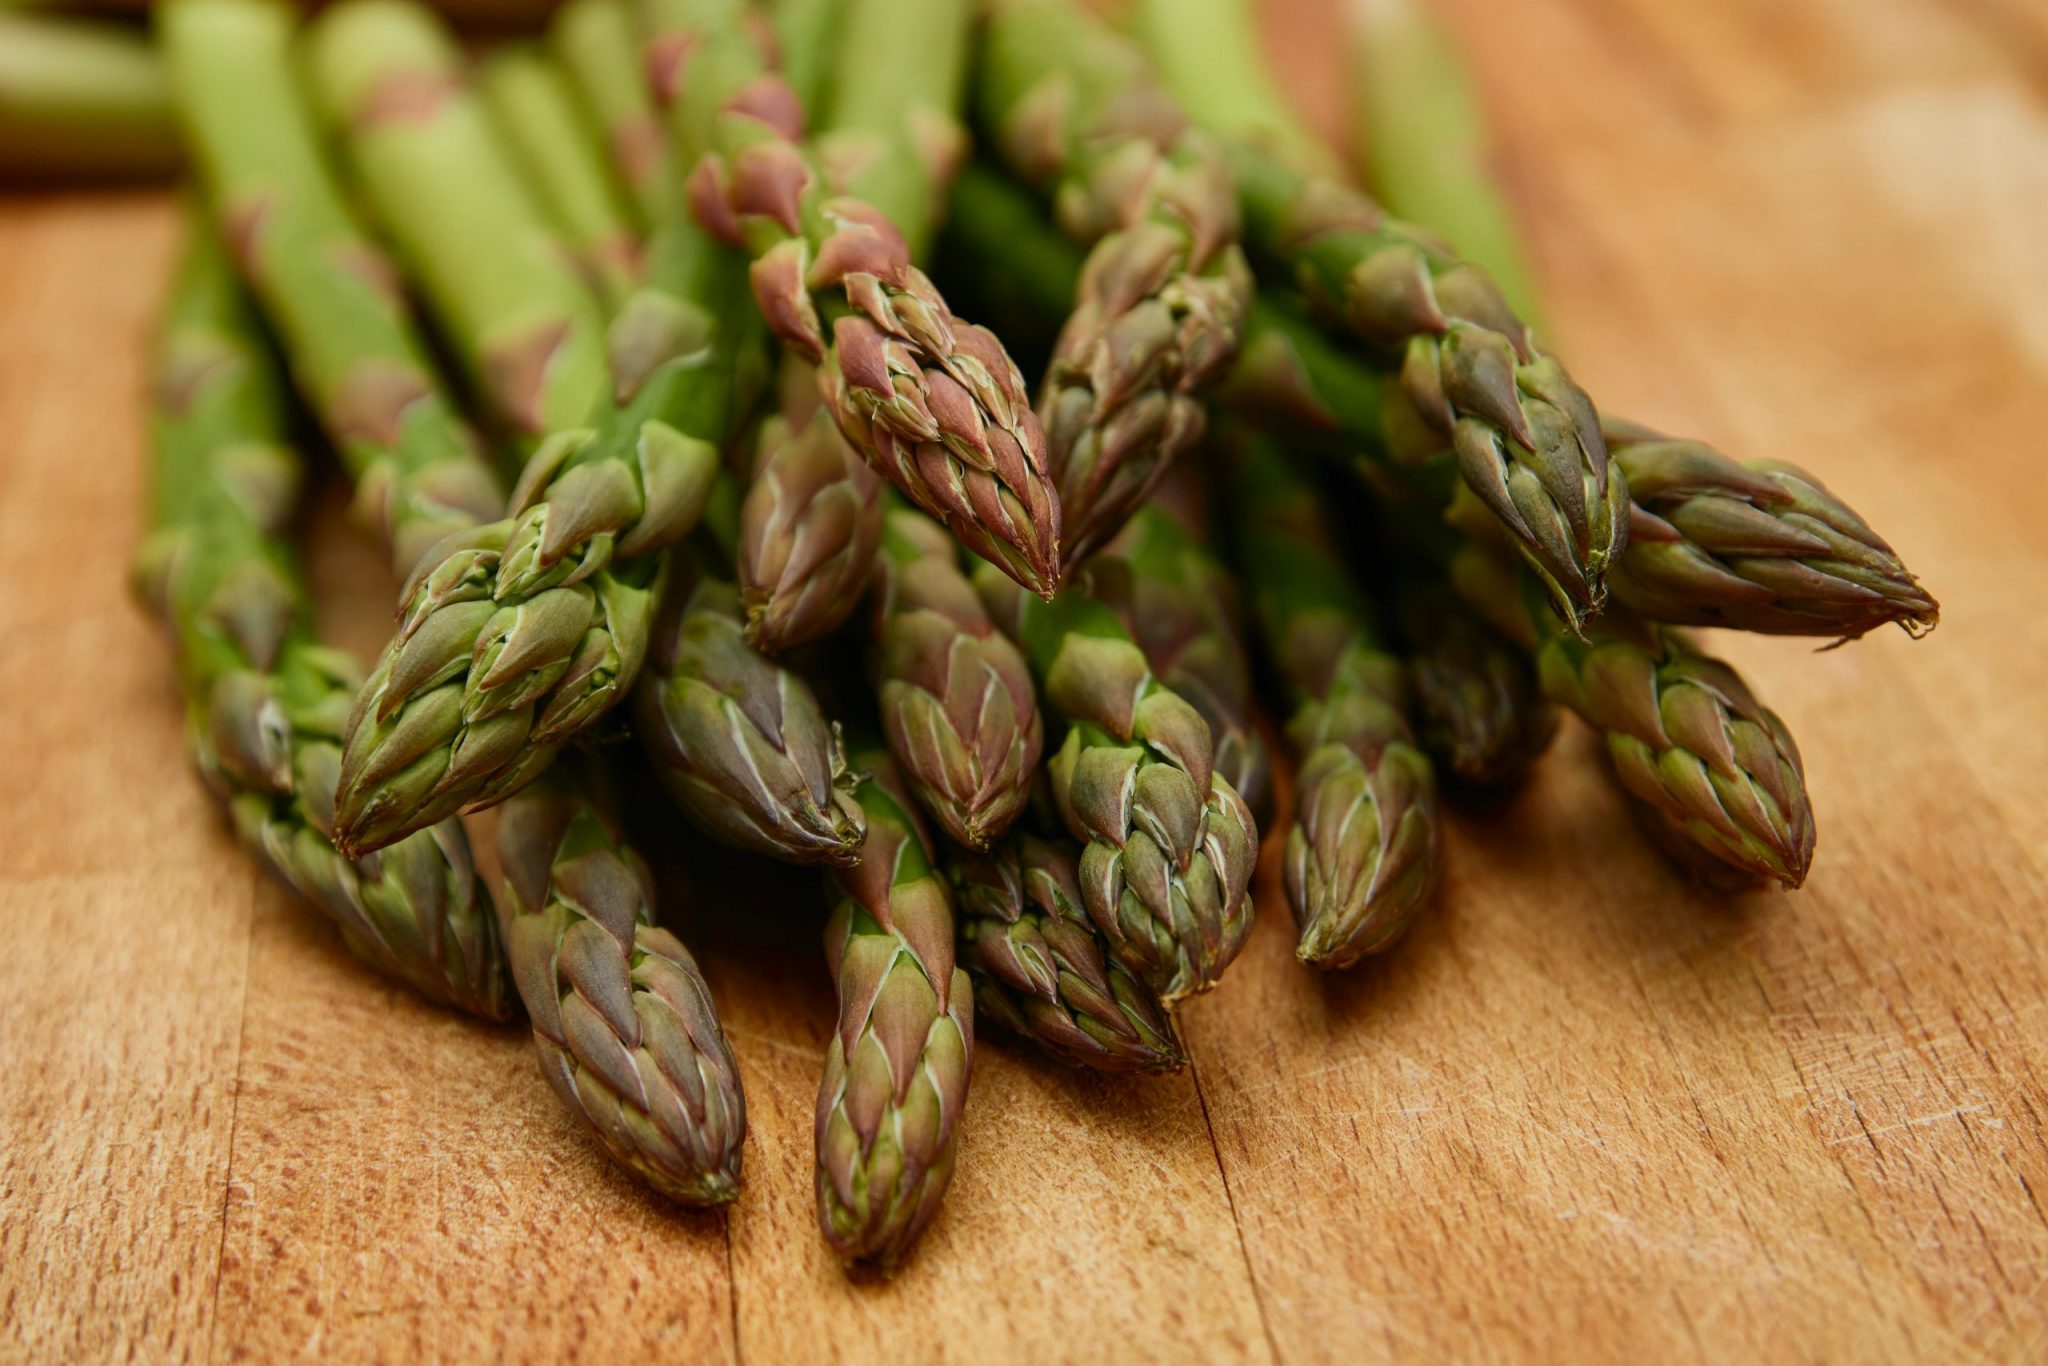 A photo of asparagus